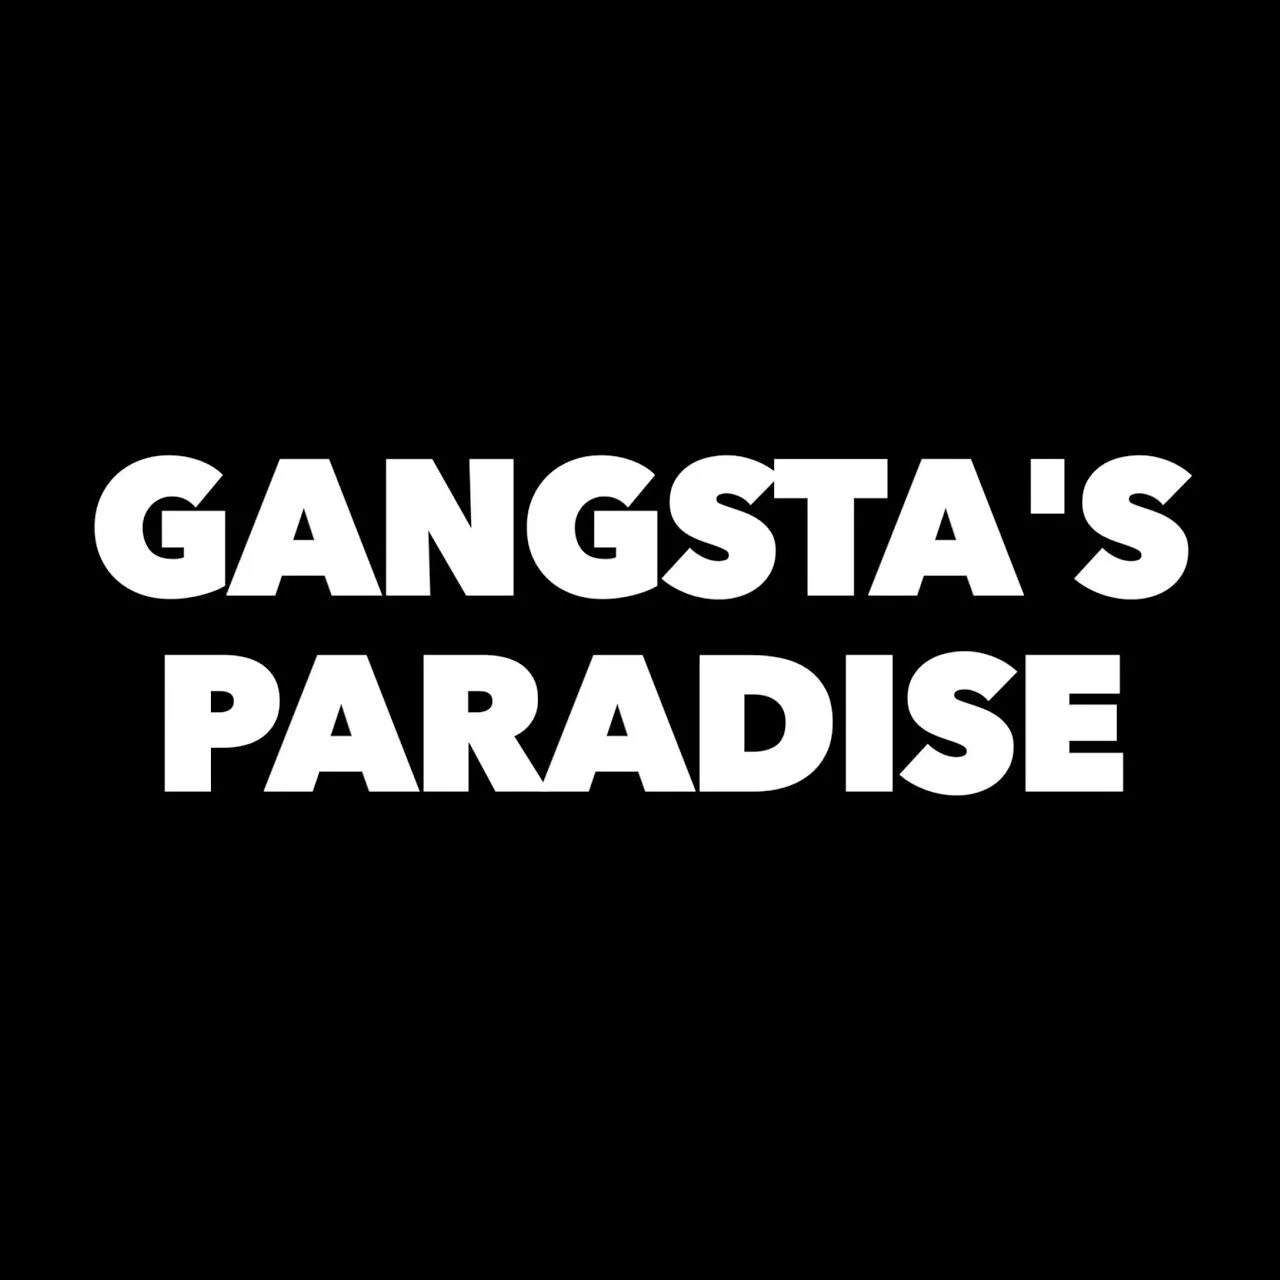 Gangsta s Paradise. Gangsta Парадайз. Coolio Gangsta's Paradise обложка. Gangsta’s Paradise Кулио. Coolio gangsta s paradise feat l v